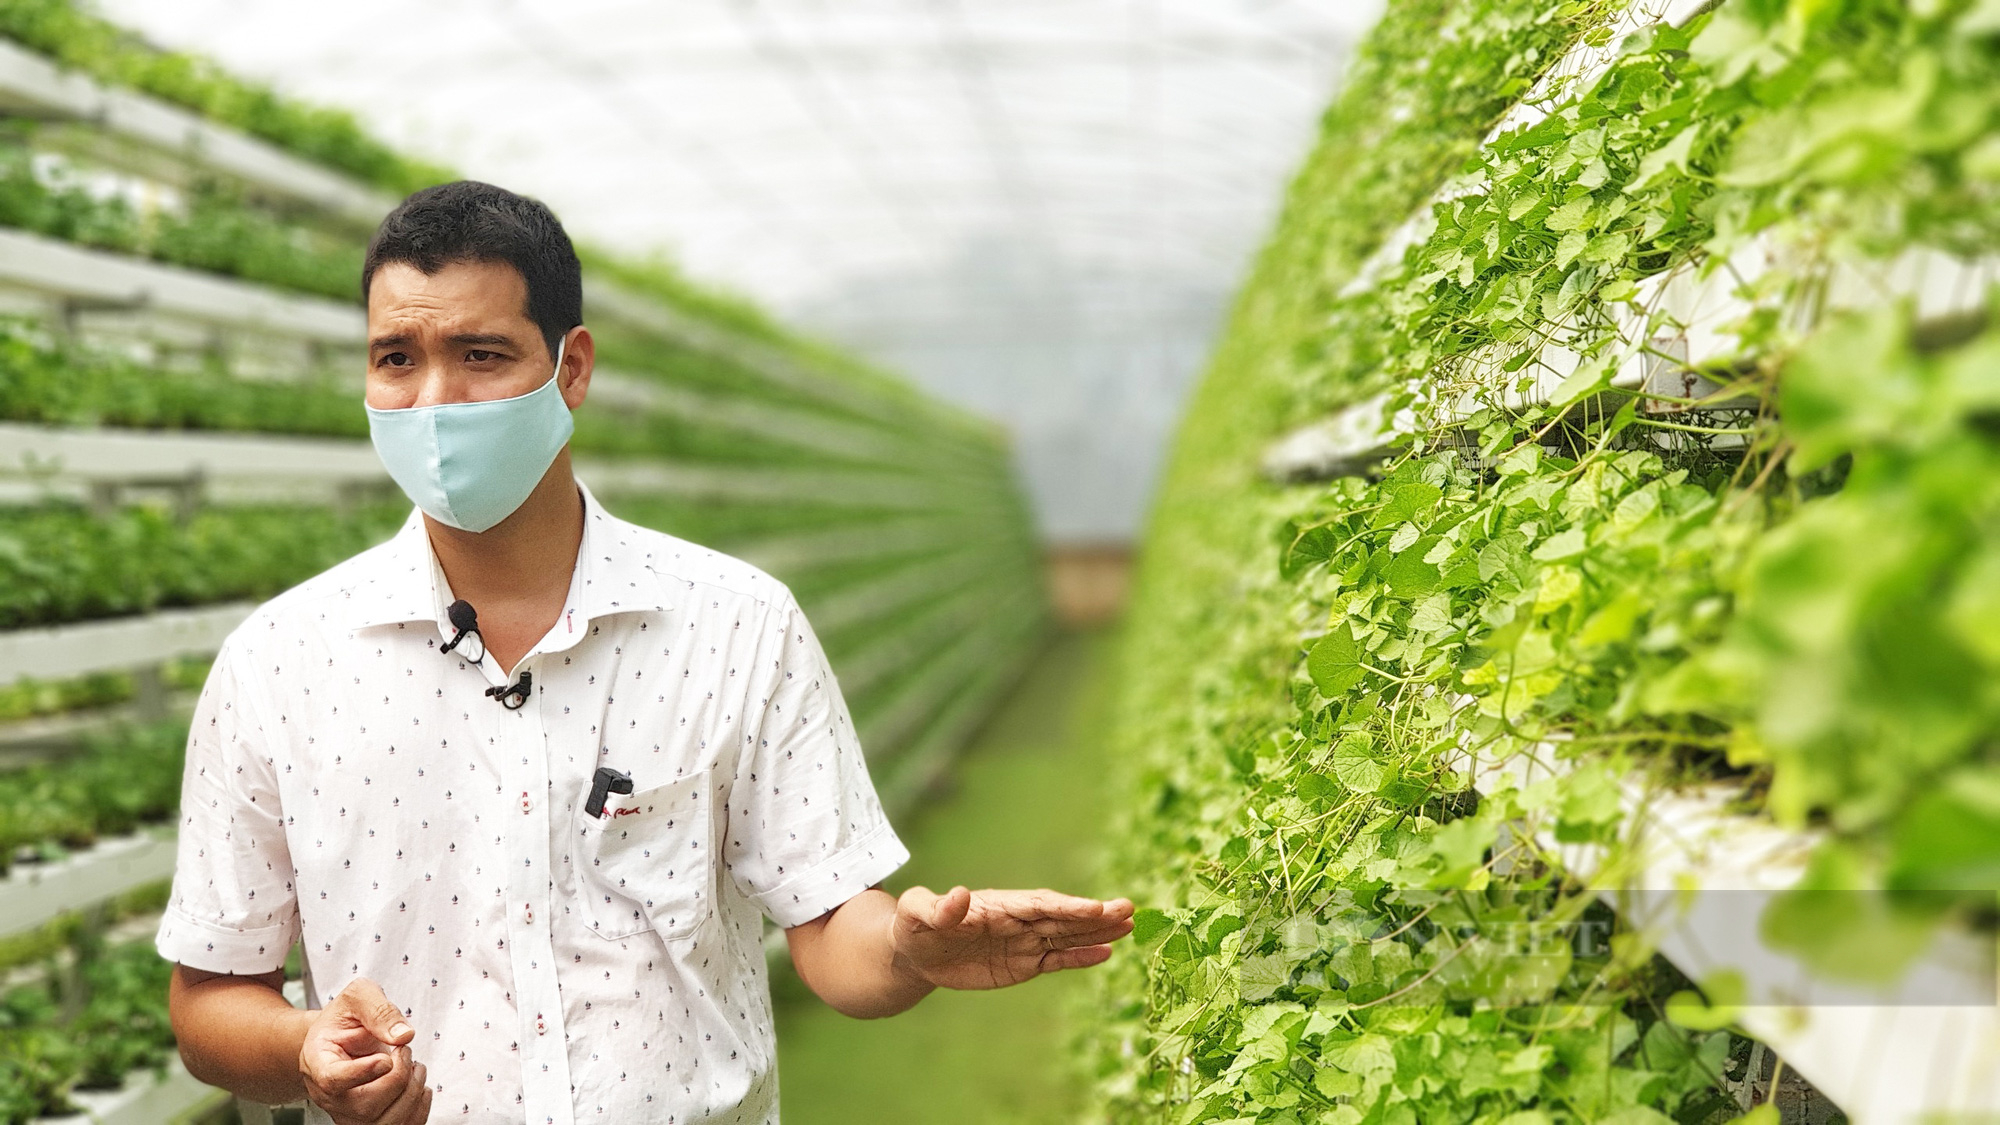 Long An giúp nông dân thay đổi tư duy sản xuất qua mô hình trồng rau má  VietGap